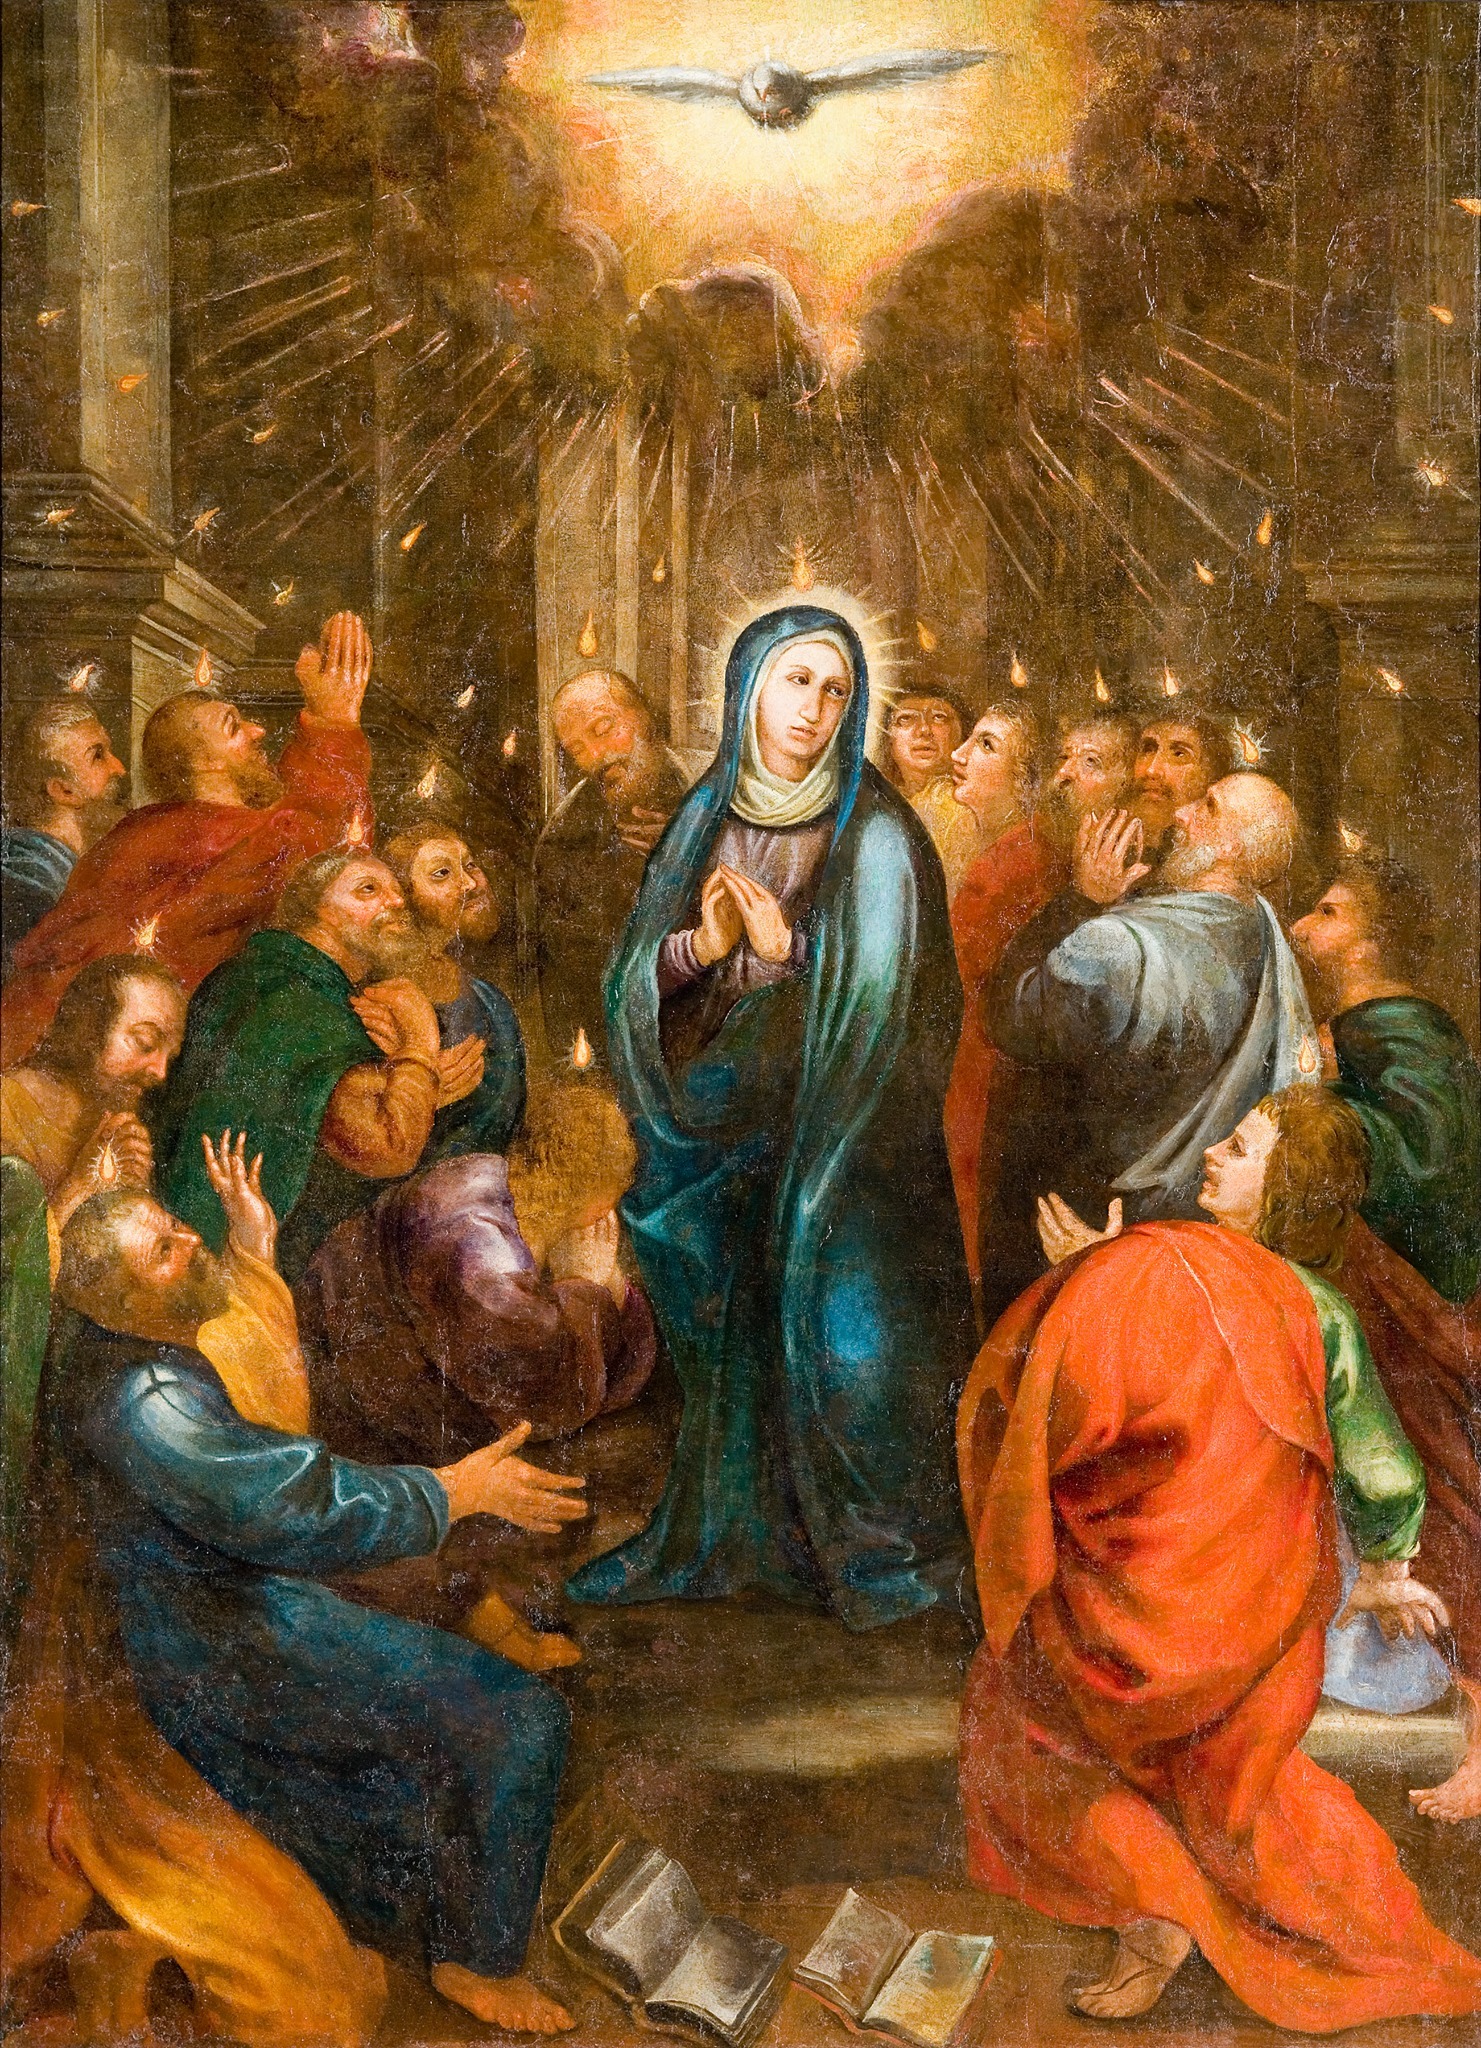 7 telas para o Calendário Litúrgico | Pentecostes - Visita temática à igreja de São Roque